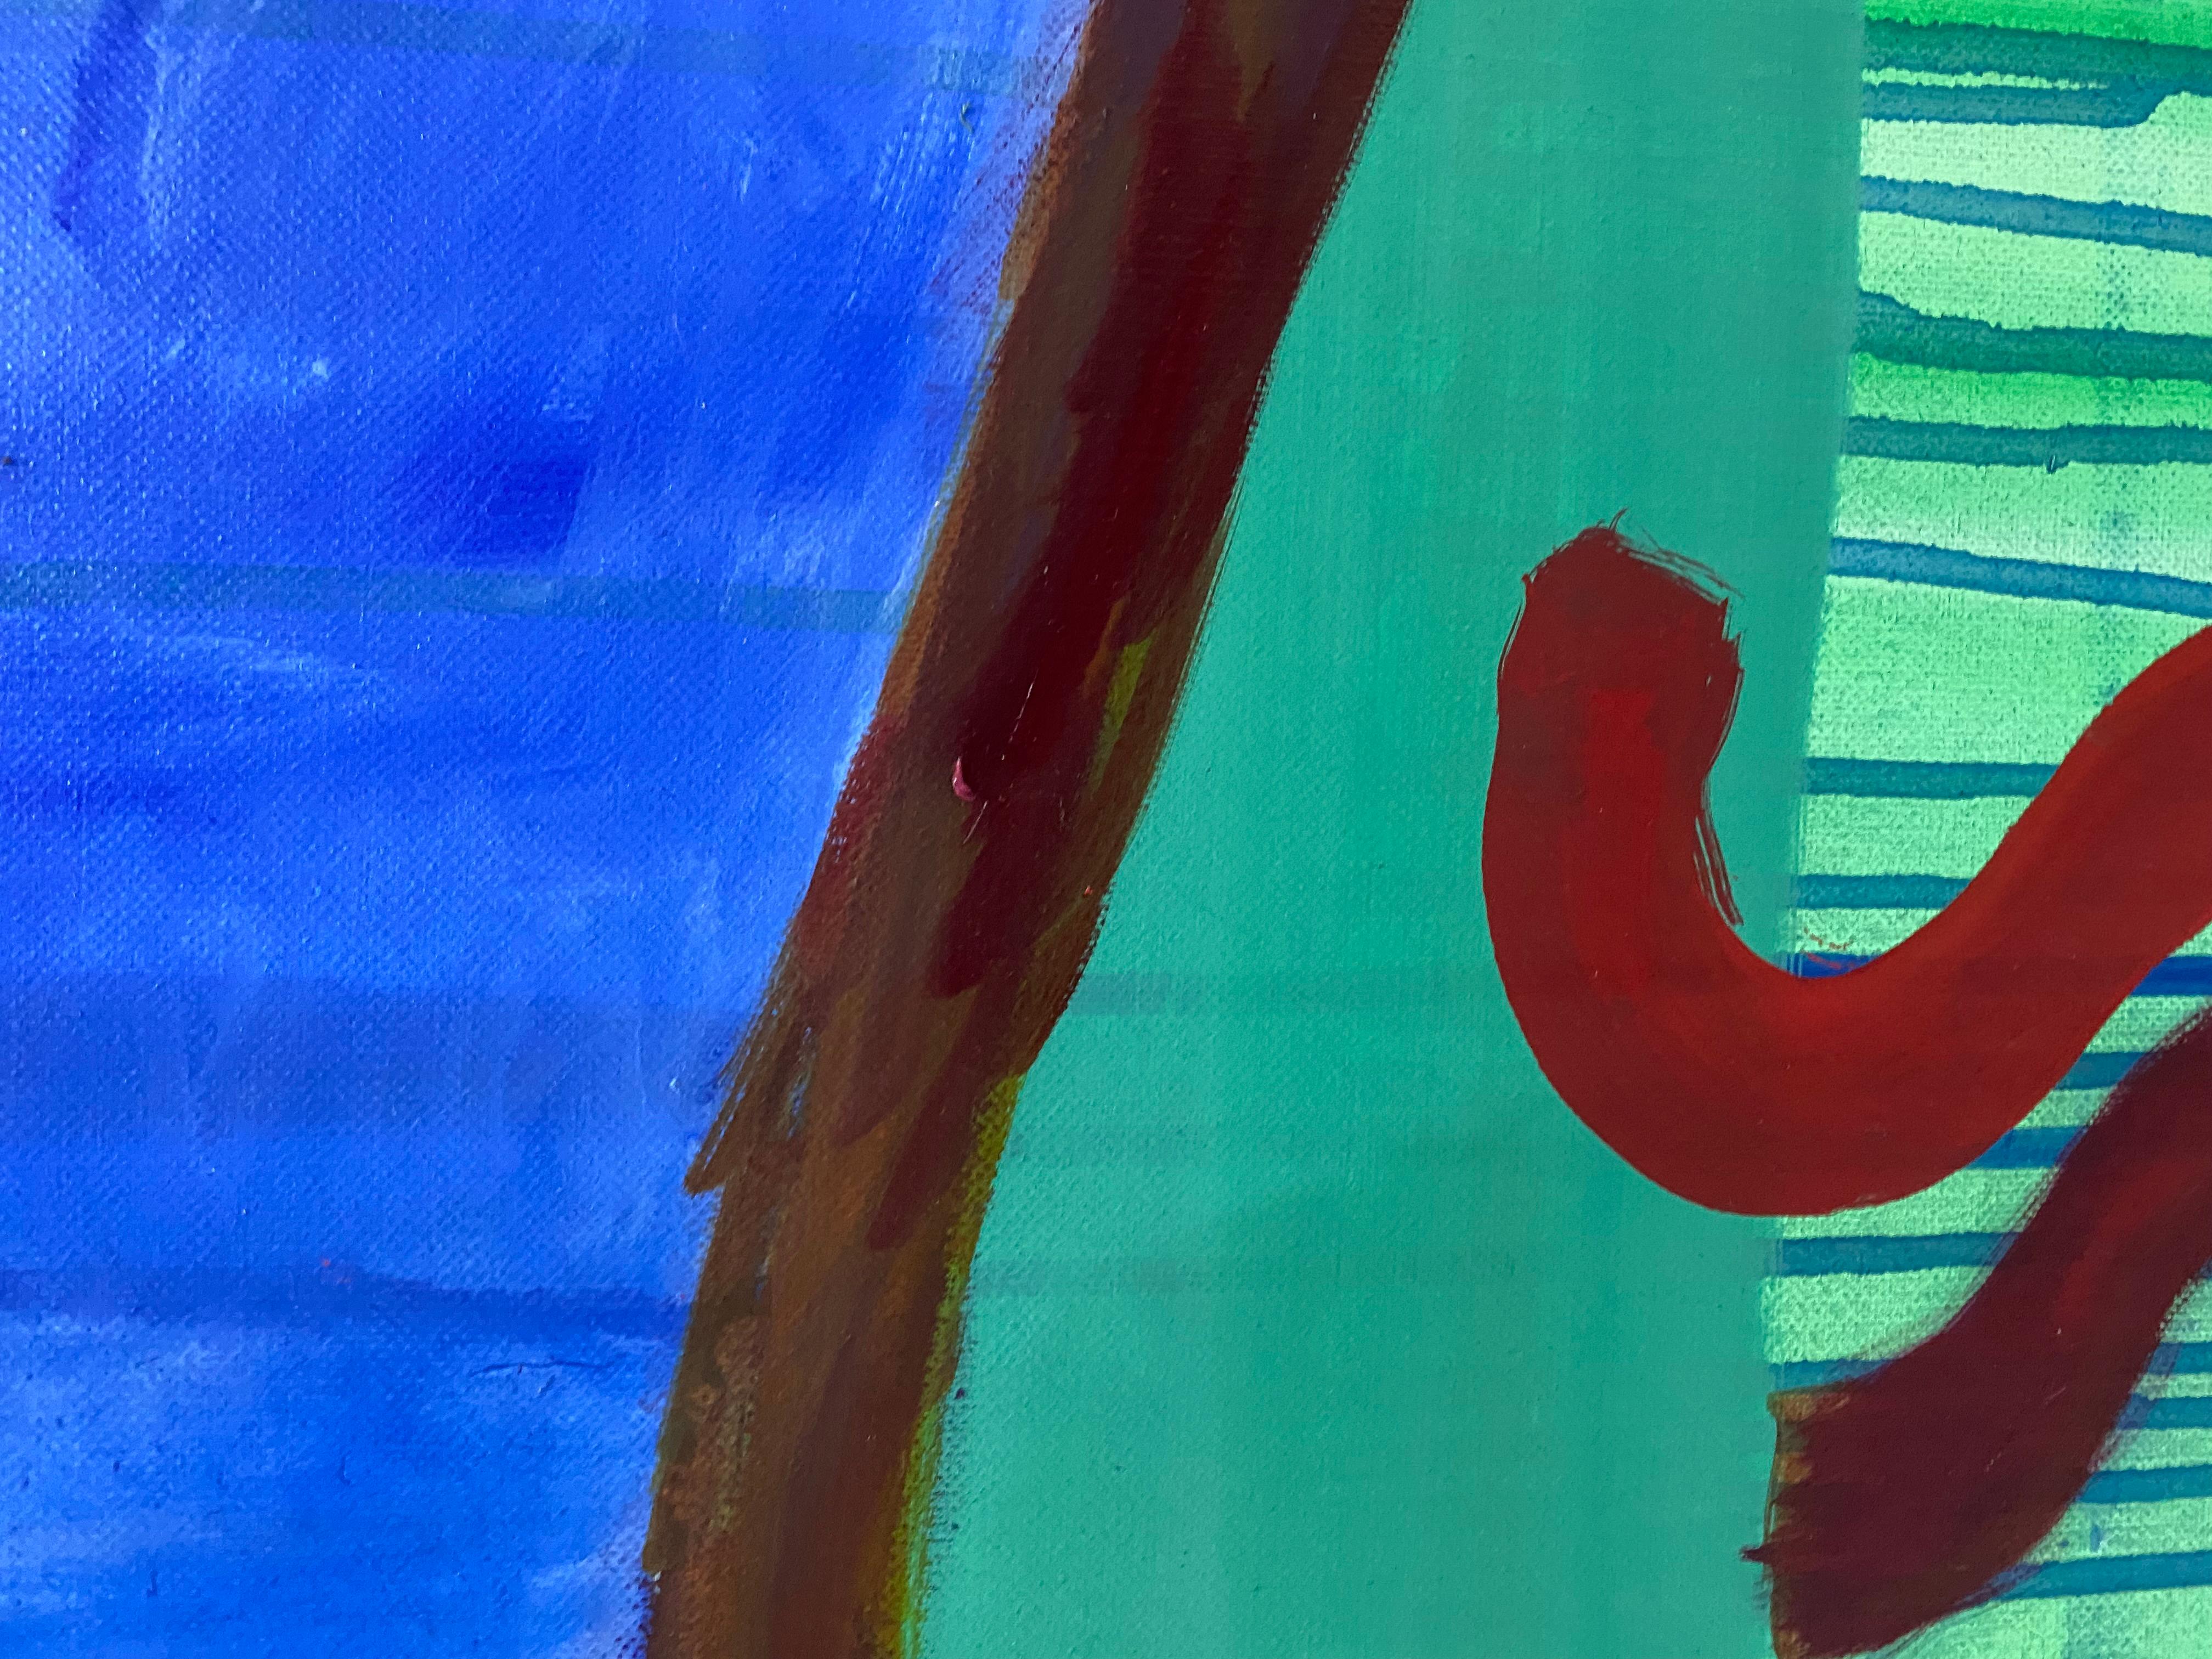 'PORTAL 4 (COMPASS)', 2021 von Sarah PICKSTONE - Öl und Acryl auf Leinen - wurde in der GALLERY46 Ausstellung 'KNOCKING IT OUT OF THE PARK' vom 5. NOVEMBER - 12. DEZEMBER 2021 ausgestellt
an der auch die Künstler JOSHUA ARMITAGE, KLAAS OP DE BEÉCK,